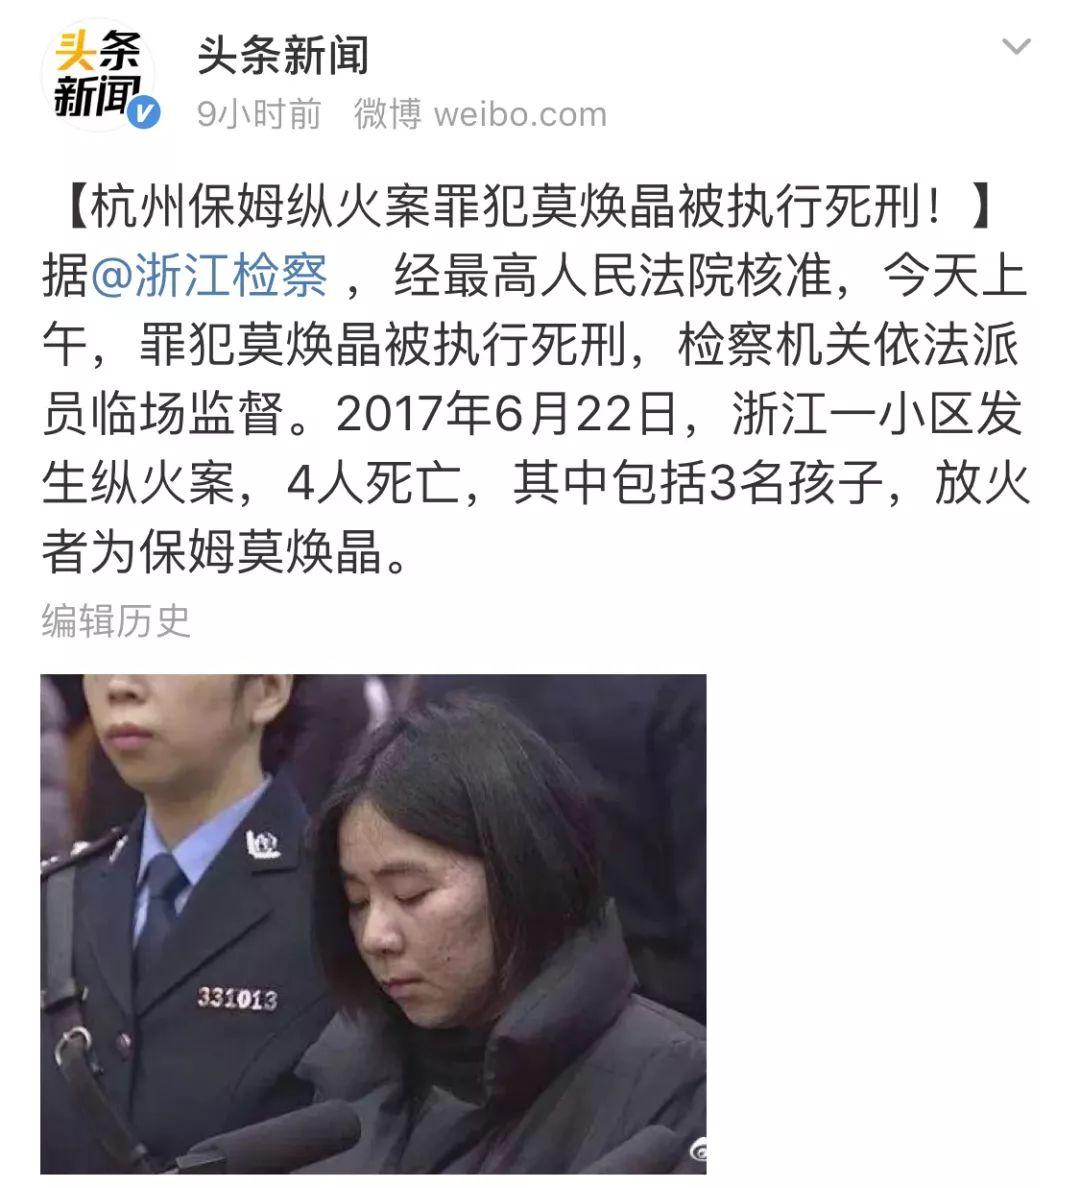 今天上午,杭州保姆纵火案,罪犯莫焕晶,被执行死刑.